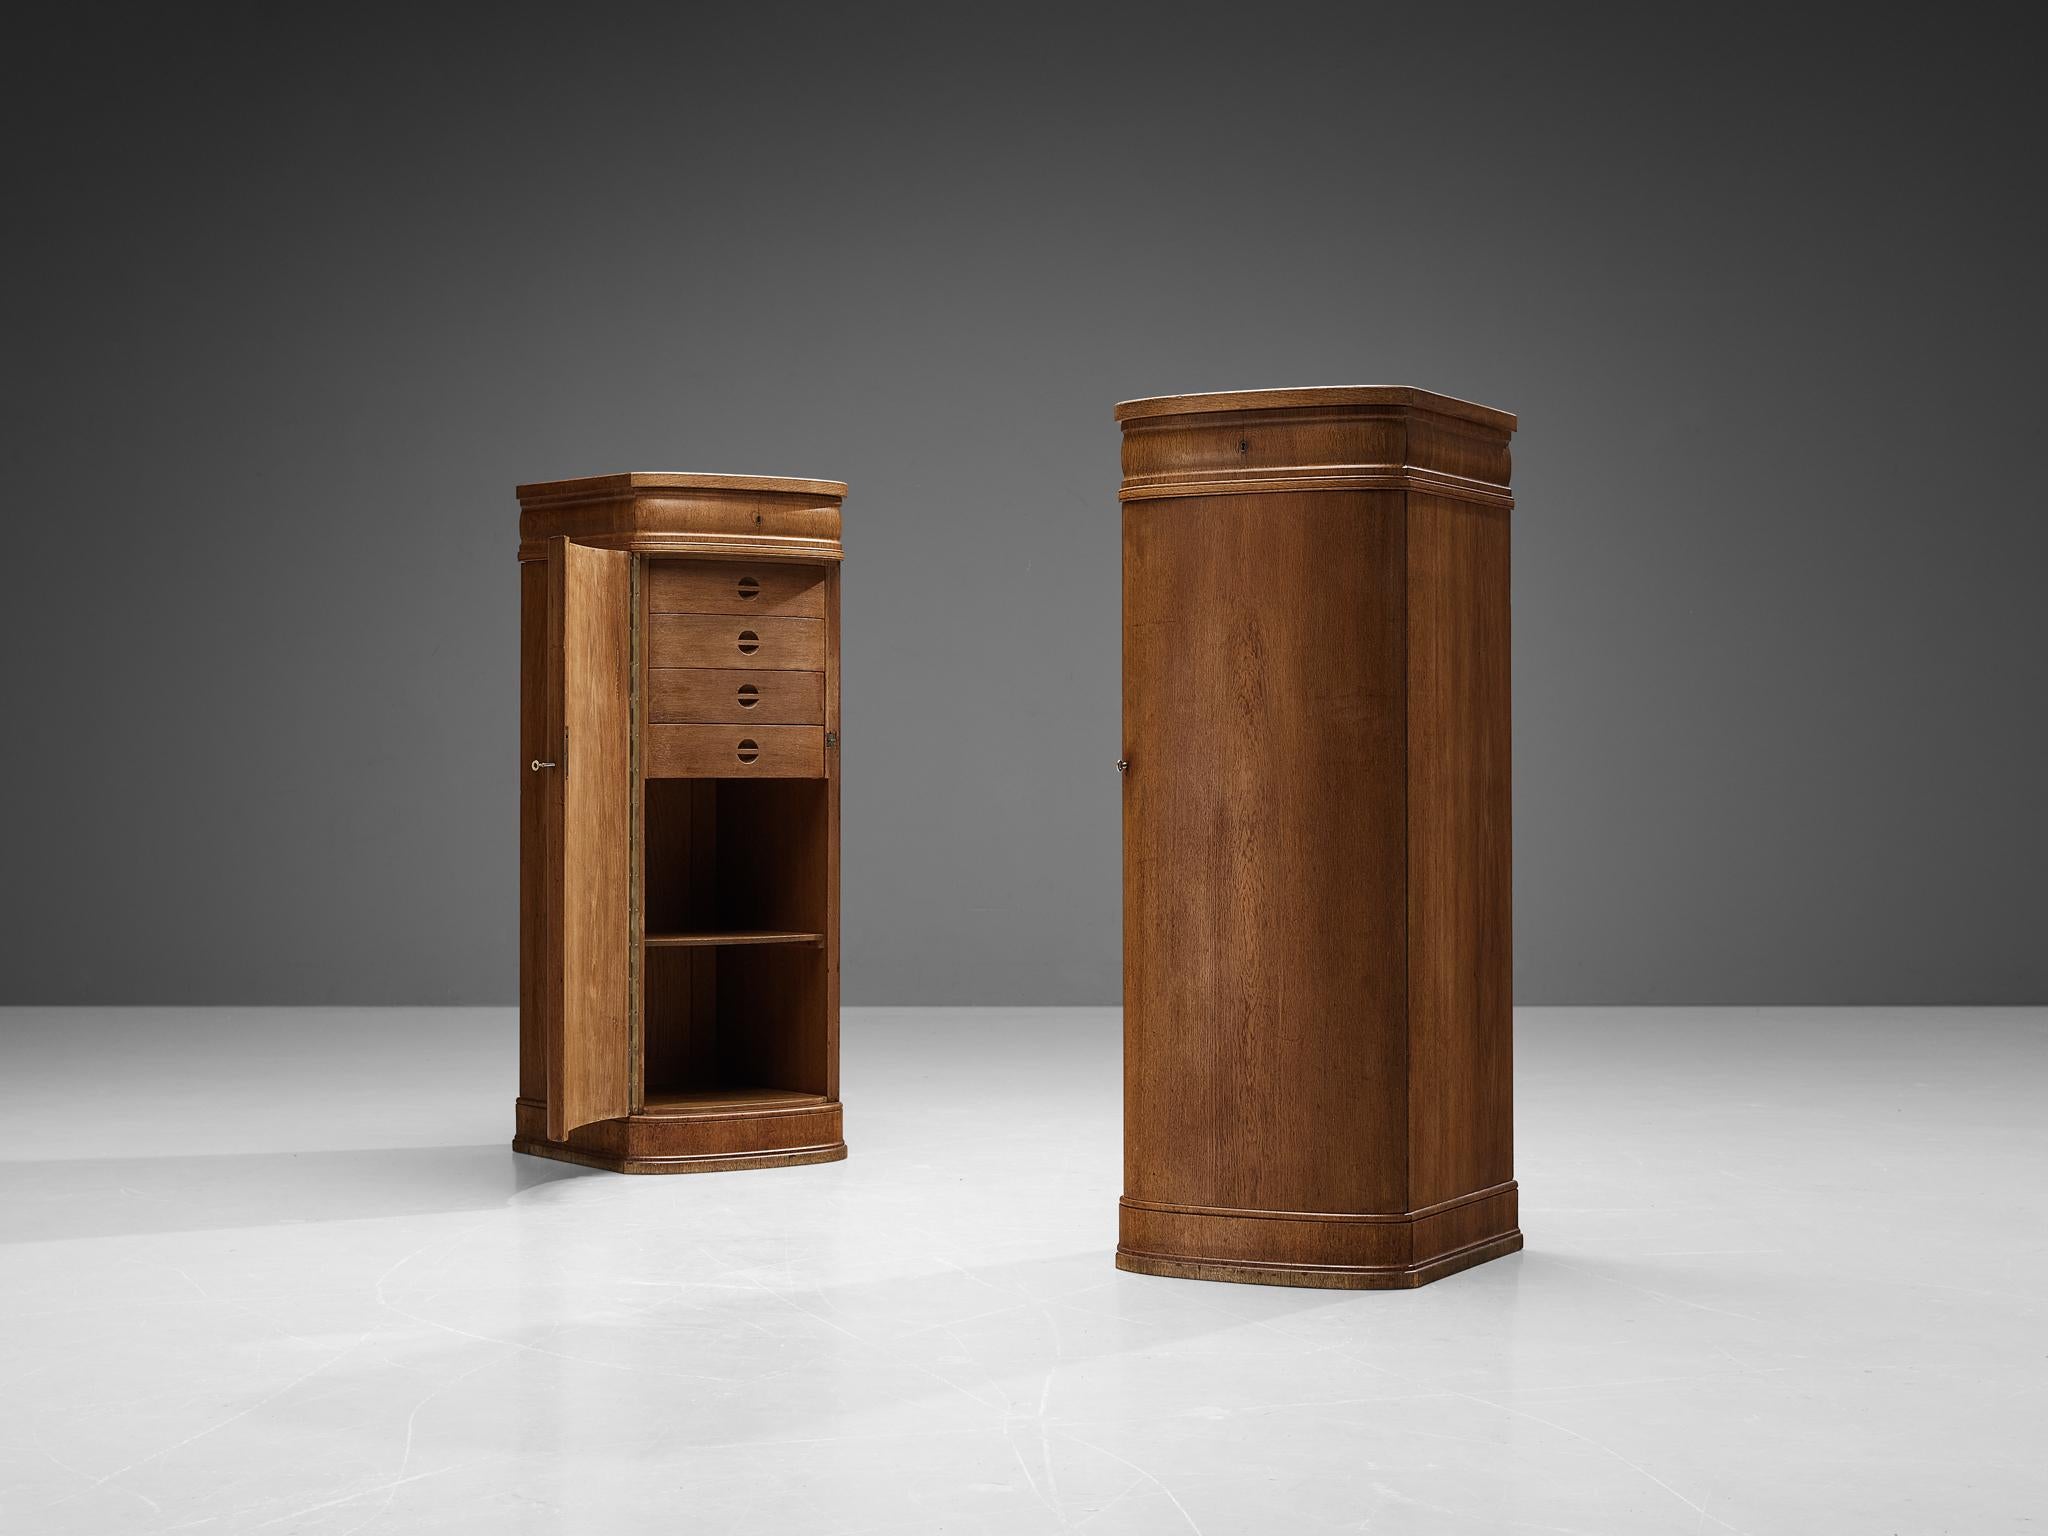 Paire d'armoires, chêne, laiton, feutre, Danemark, années 1940. 

Cette paire d'armoires à chiffonières raffinées est certainement l'œuvre d'un ébéniste qui a su concevoir un meuble de grande qualité. L'excellence de l'artisanat est associée à un